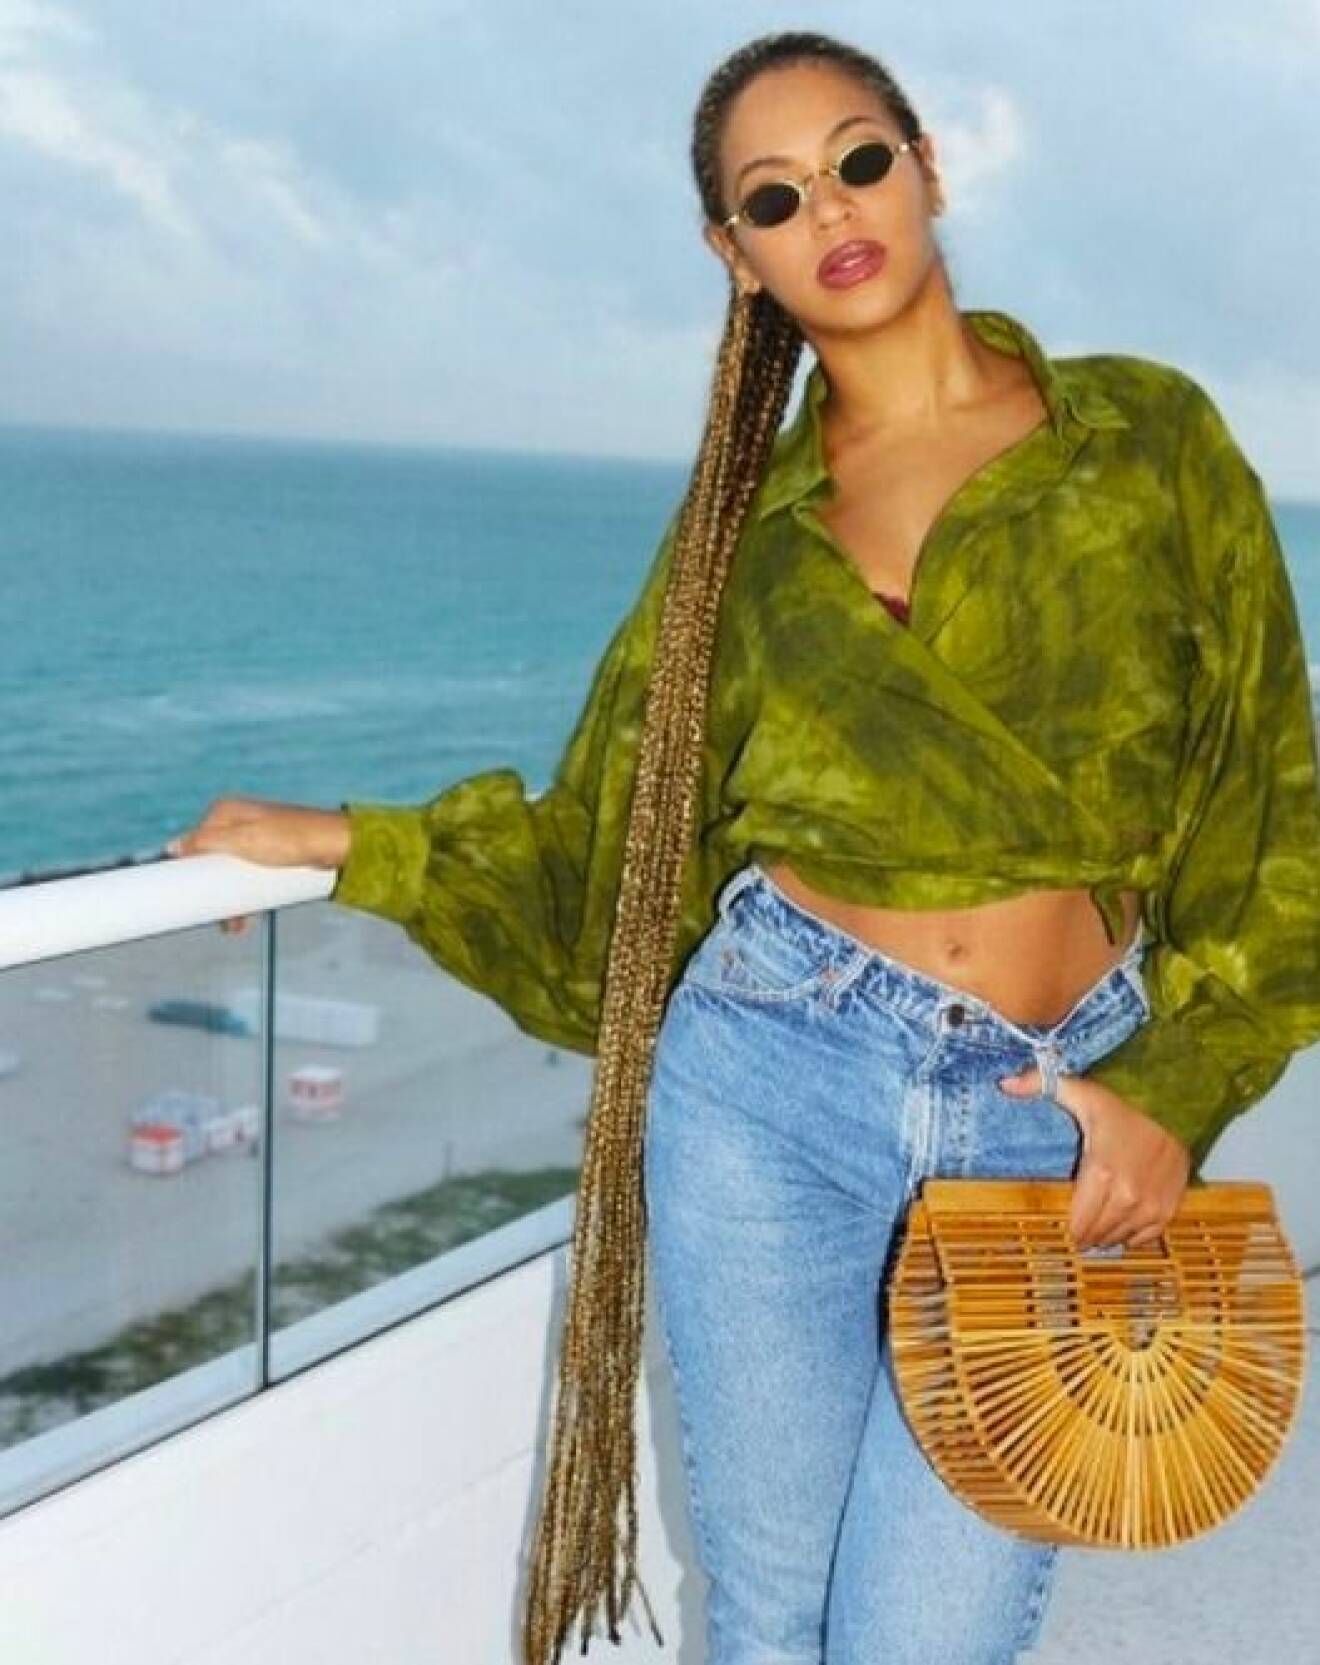 Beyoncé i grön batiksjorta och ljusblå jeans fotad på en balkong med en handväska i bambu. Väskan är formad som en halvcirkel och stel i formen. Handväska från Cult Gaia.